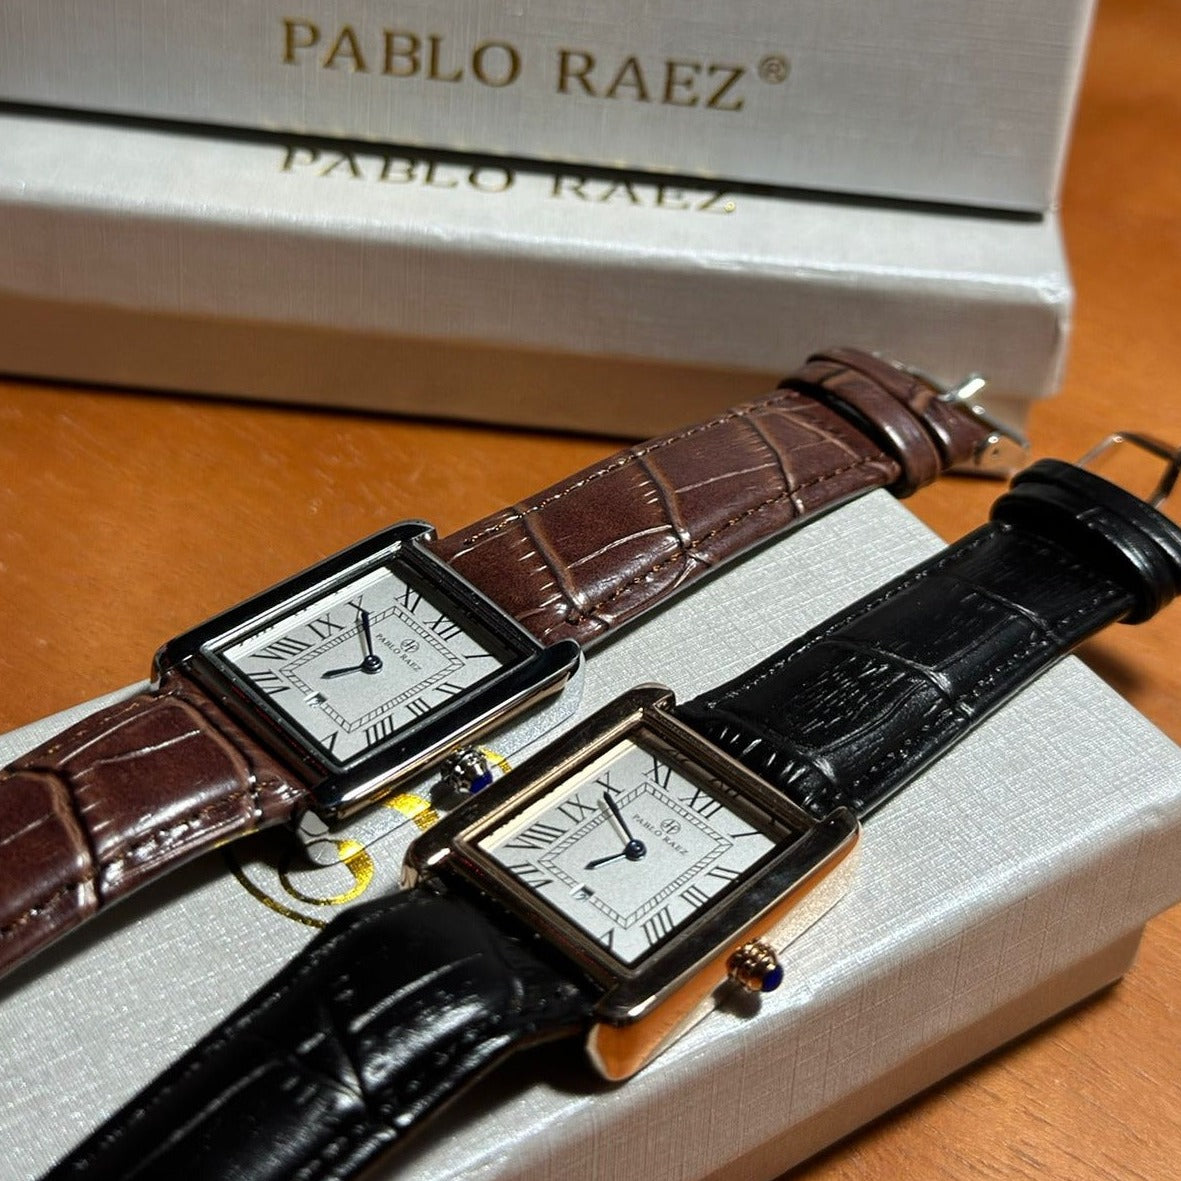 Relógio Quadrado em Couro Pablo Raez 34mm | Caixa exclusiva